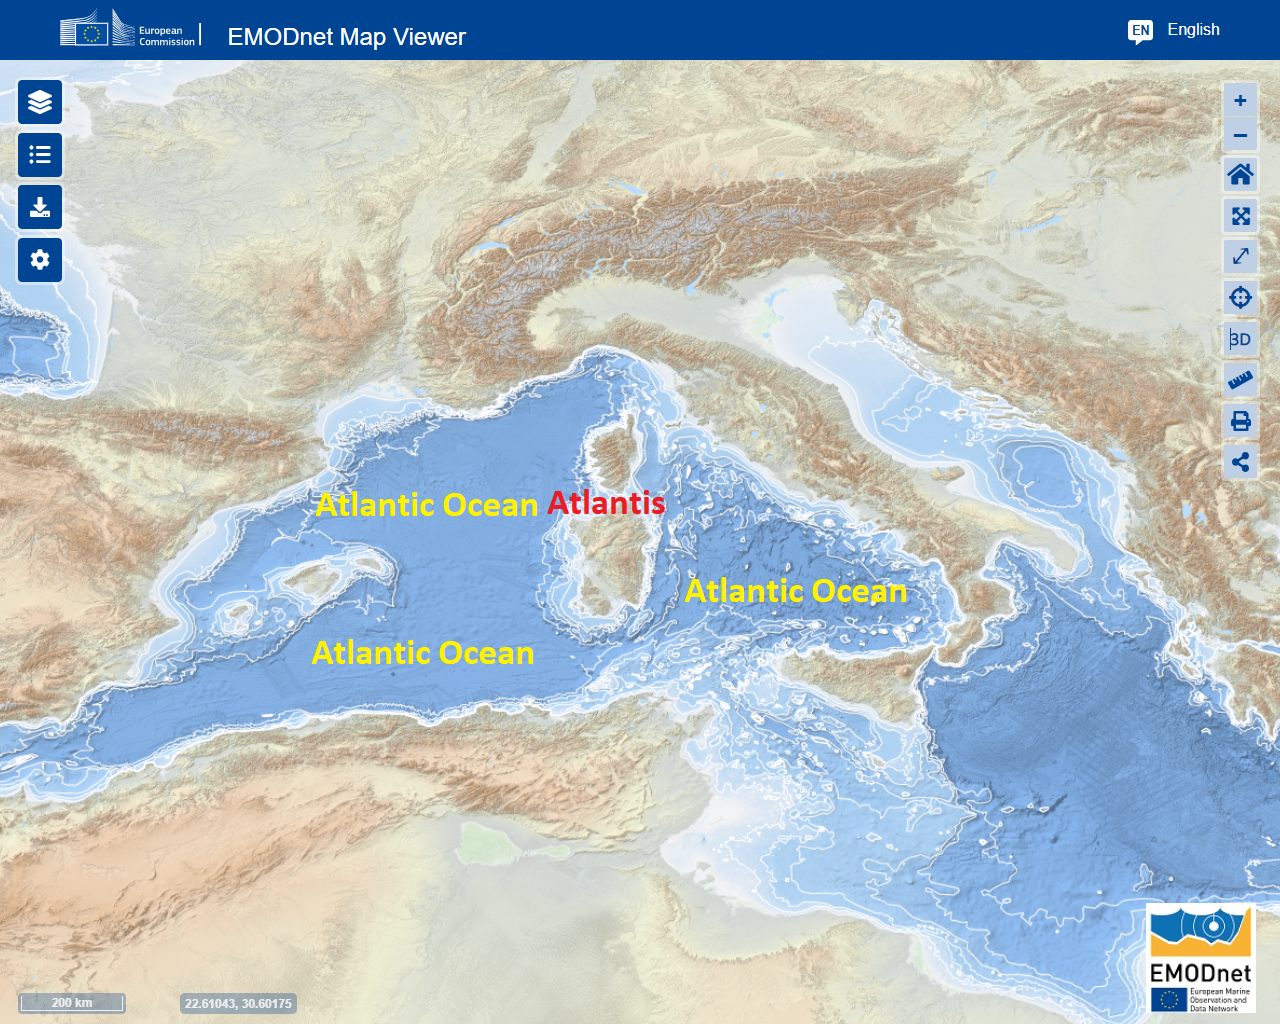 मेसोलिथिक अटलांटिक महासागर में अटलांटिस को आज भूमध्य सागर कहा जाता है